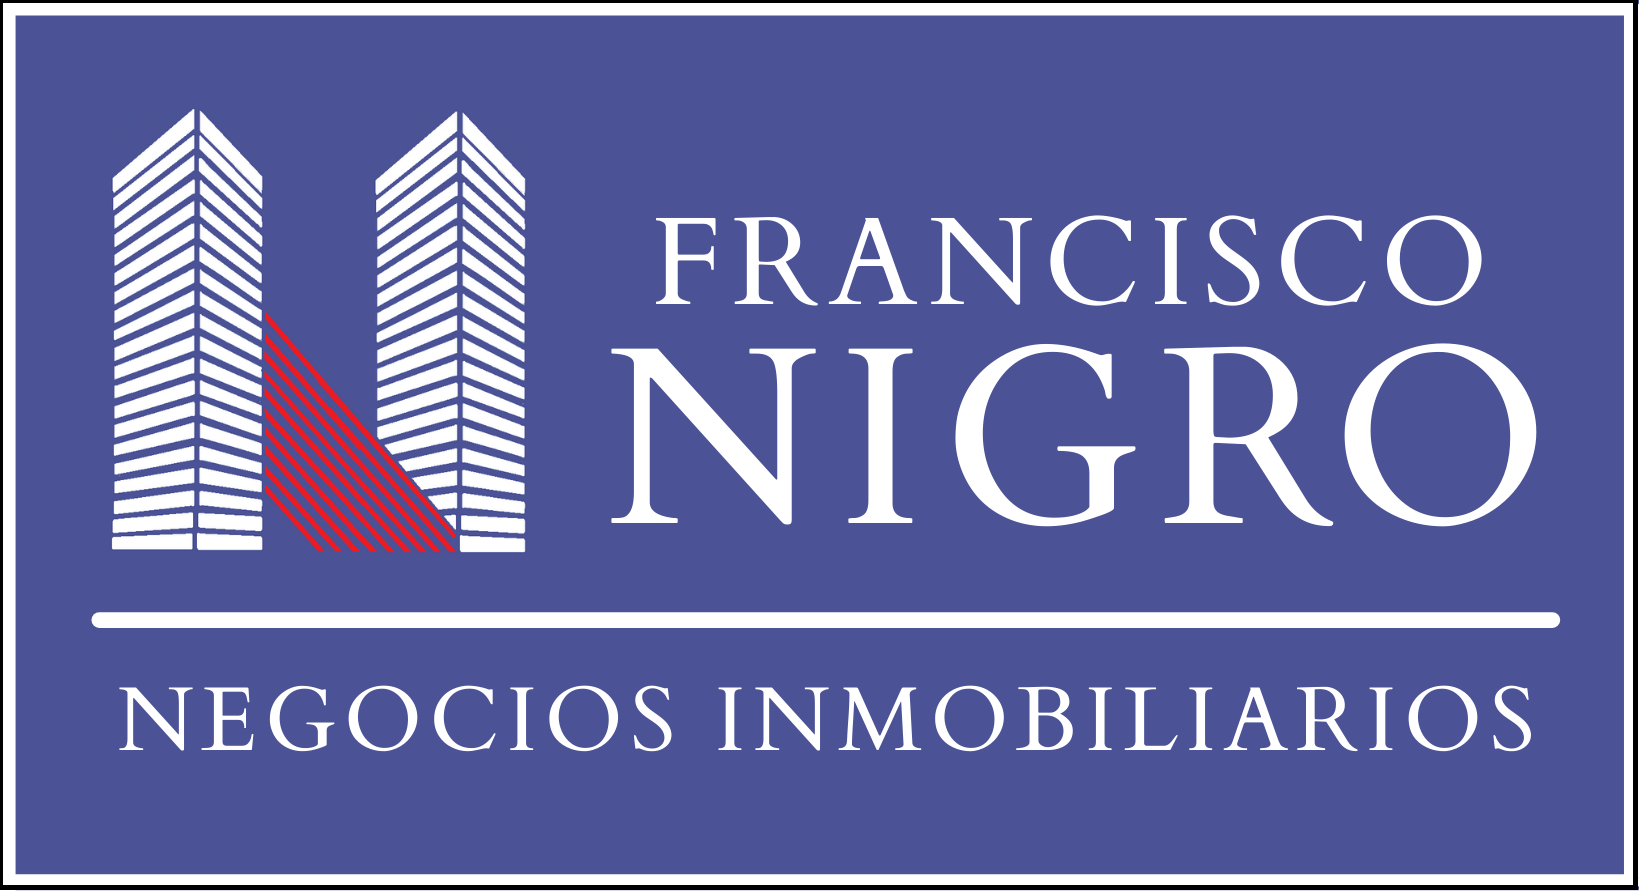 FRANCISCO NIGRO NEGOCIOS INMOBILIARIOS